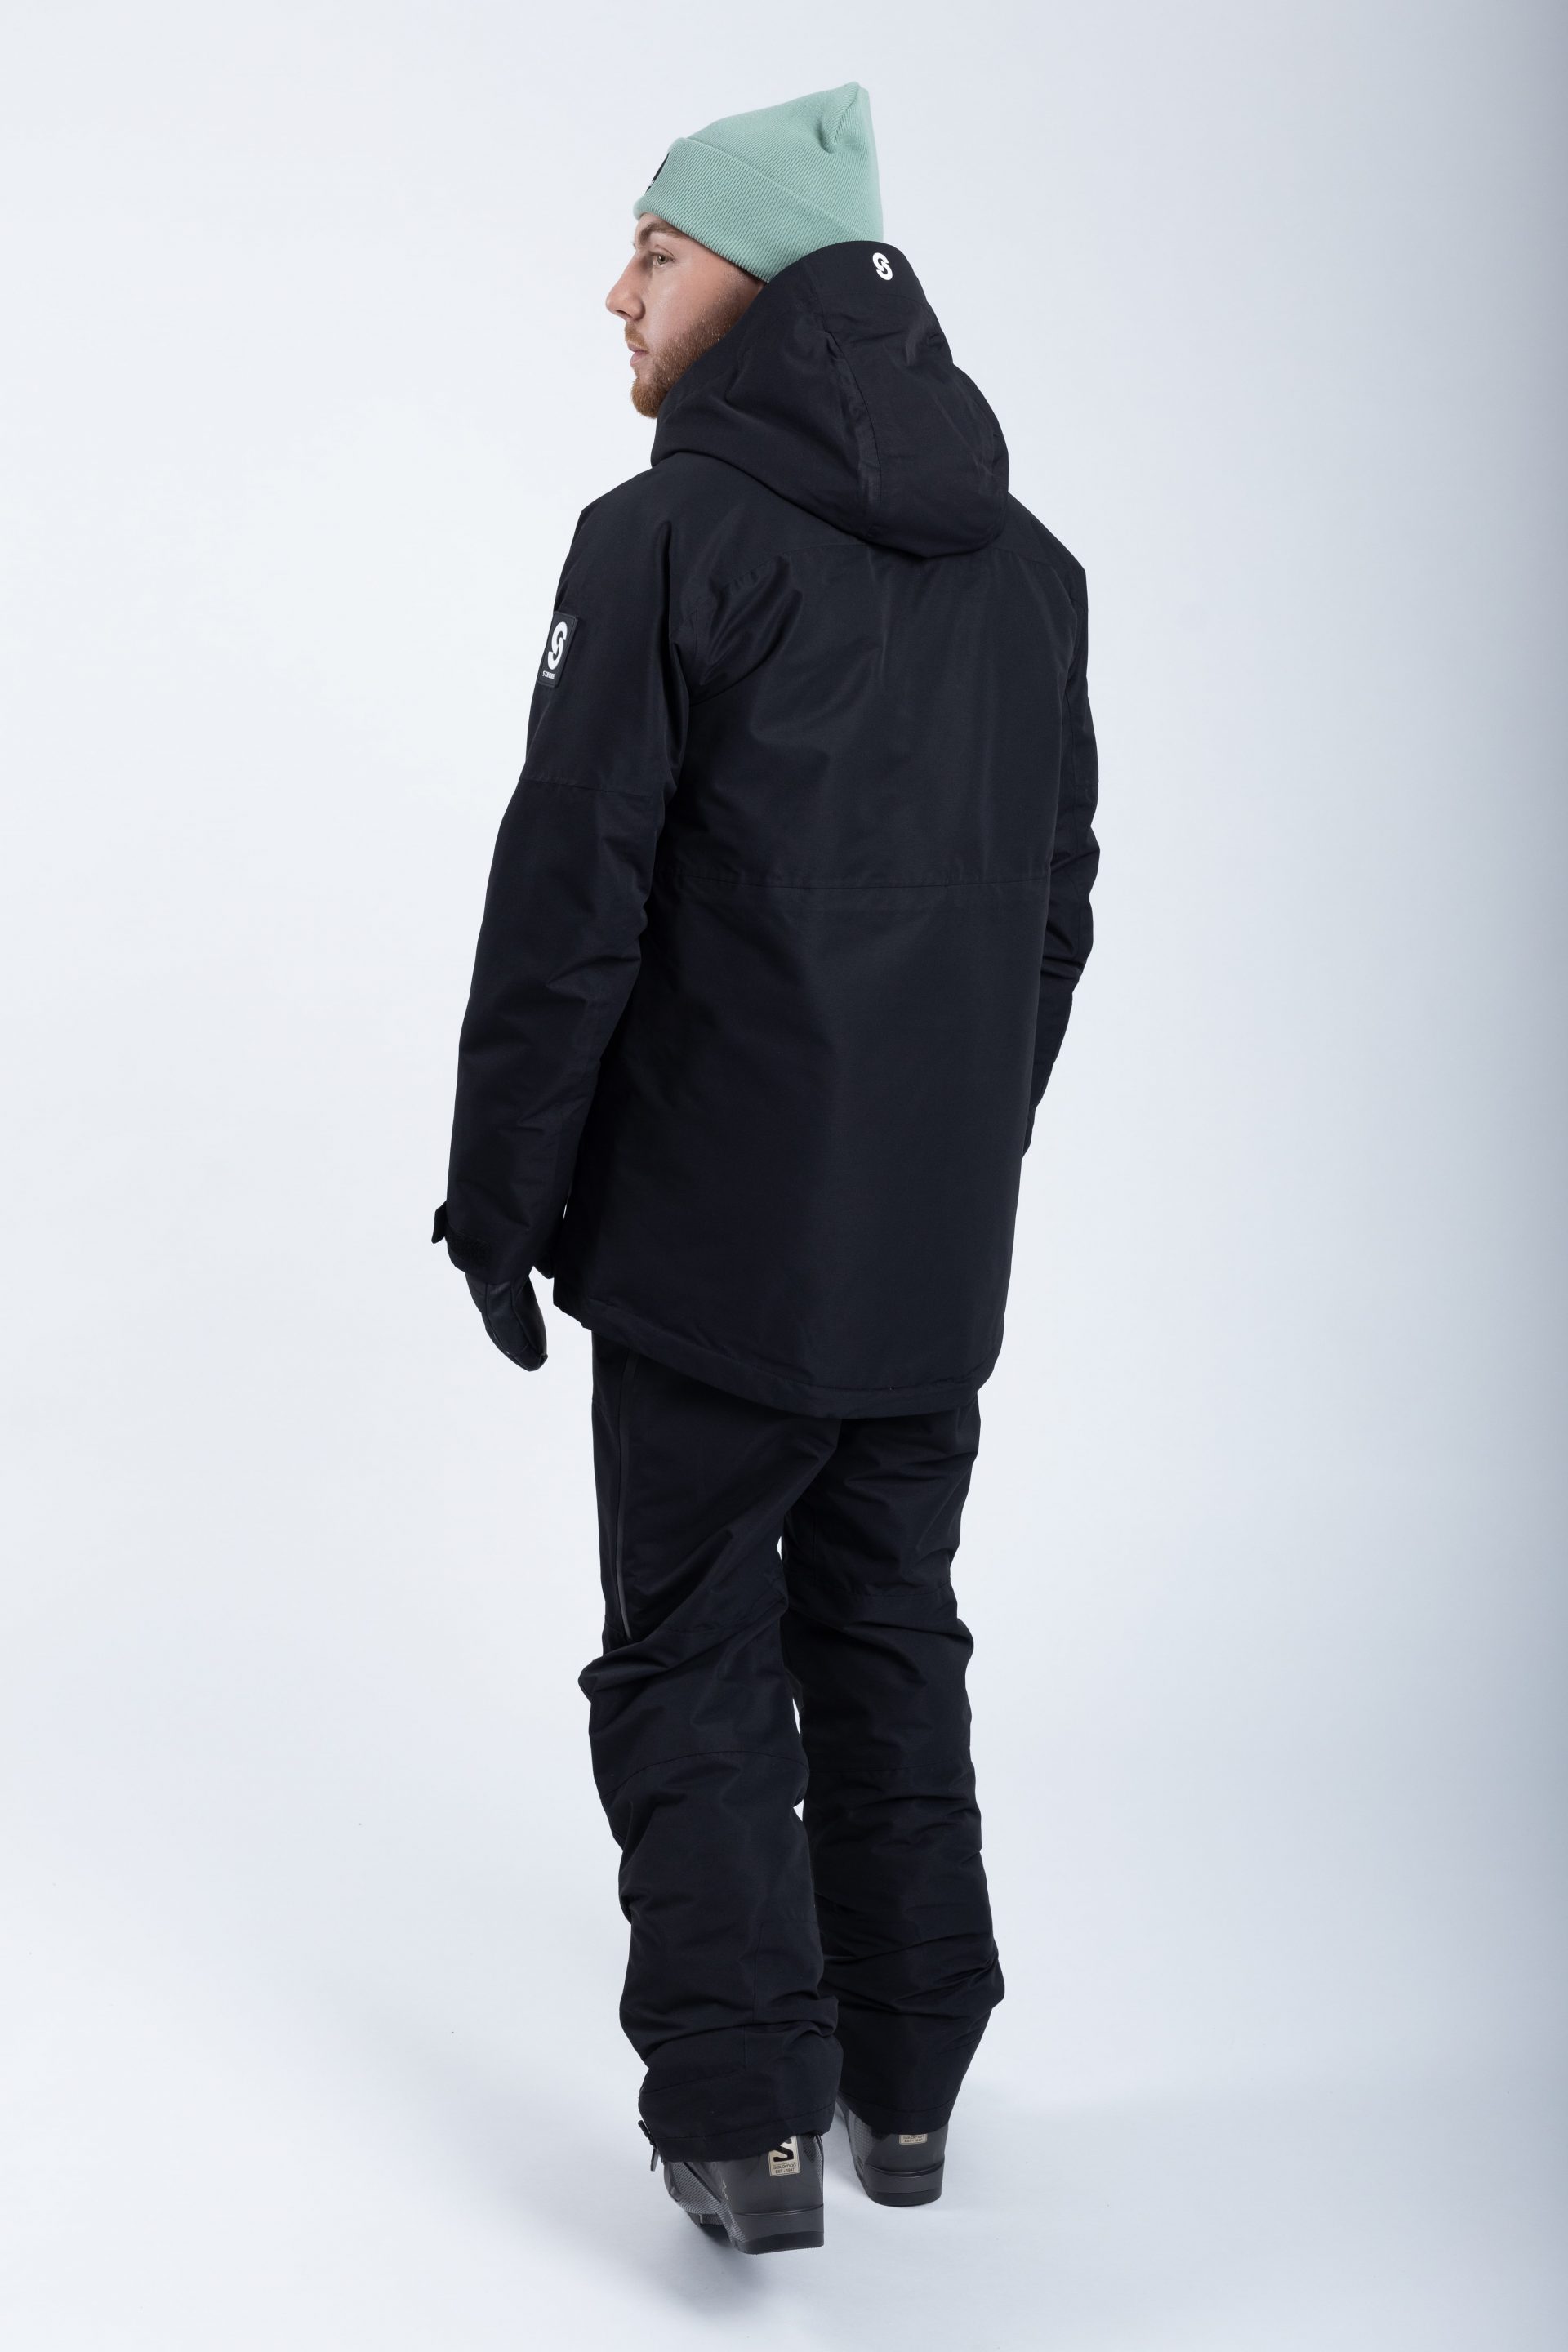 Lynx Ski Jacket Black - Women's - Strobe